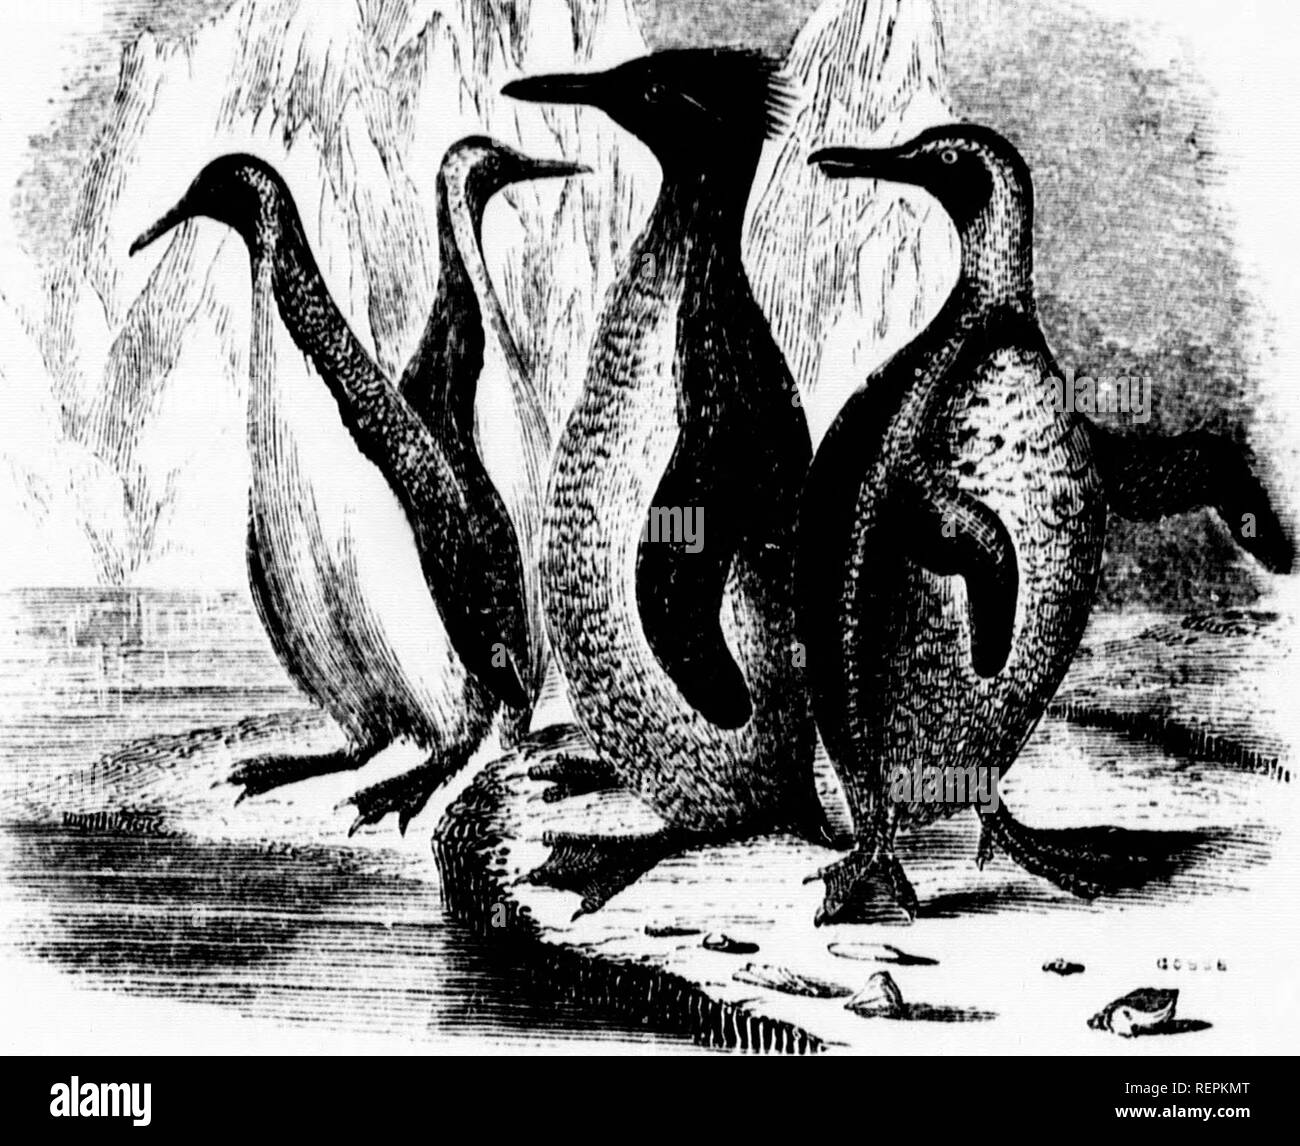 . L'oceano [microformati]. Biologia marina; animali marini; piante marine; Biologie; marino marini faune e flore marine. TIIH I'ACri'IC oceano. 221 III munncrs e geiiurully uro trovati nella società arco Thuso quello appena inuntionod, Crested Pen- guin {A. chrymcome), e il Jackass Penguin (A. ikimrsa). Quest'ultimo ha ohtained il suo titolo dal suo' nightly h.-ibit di emettere suoni discordanti che â ^&lt;R'-'. -R^rji^-'. J'engcjixs. sono stati paragonati alle effusioni del nostro umile amico sonoro del comune. Questa specie sembra discostarsi dal modo generale di allevamento, come burrows su Foto Stock